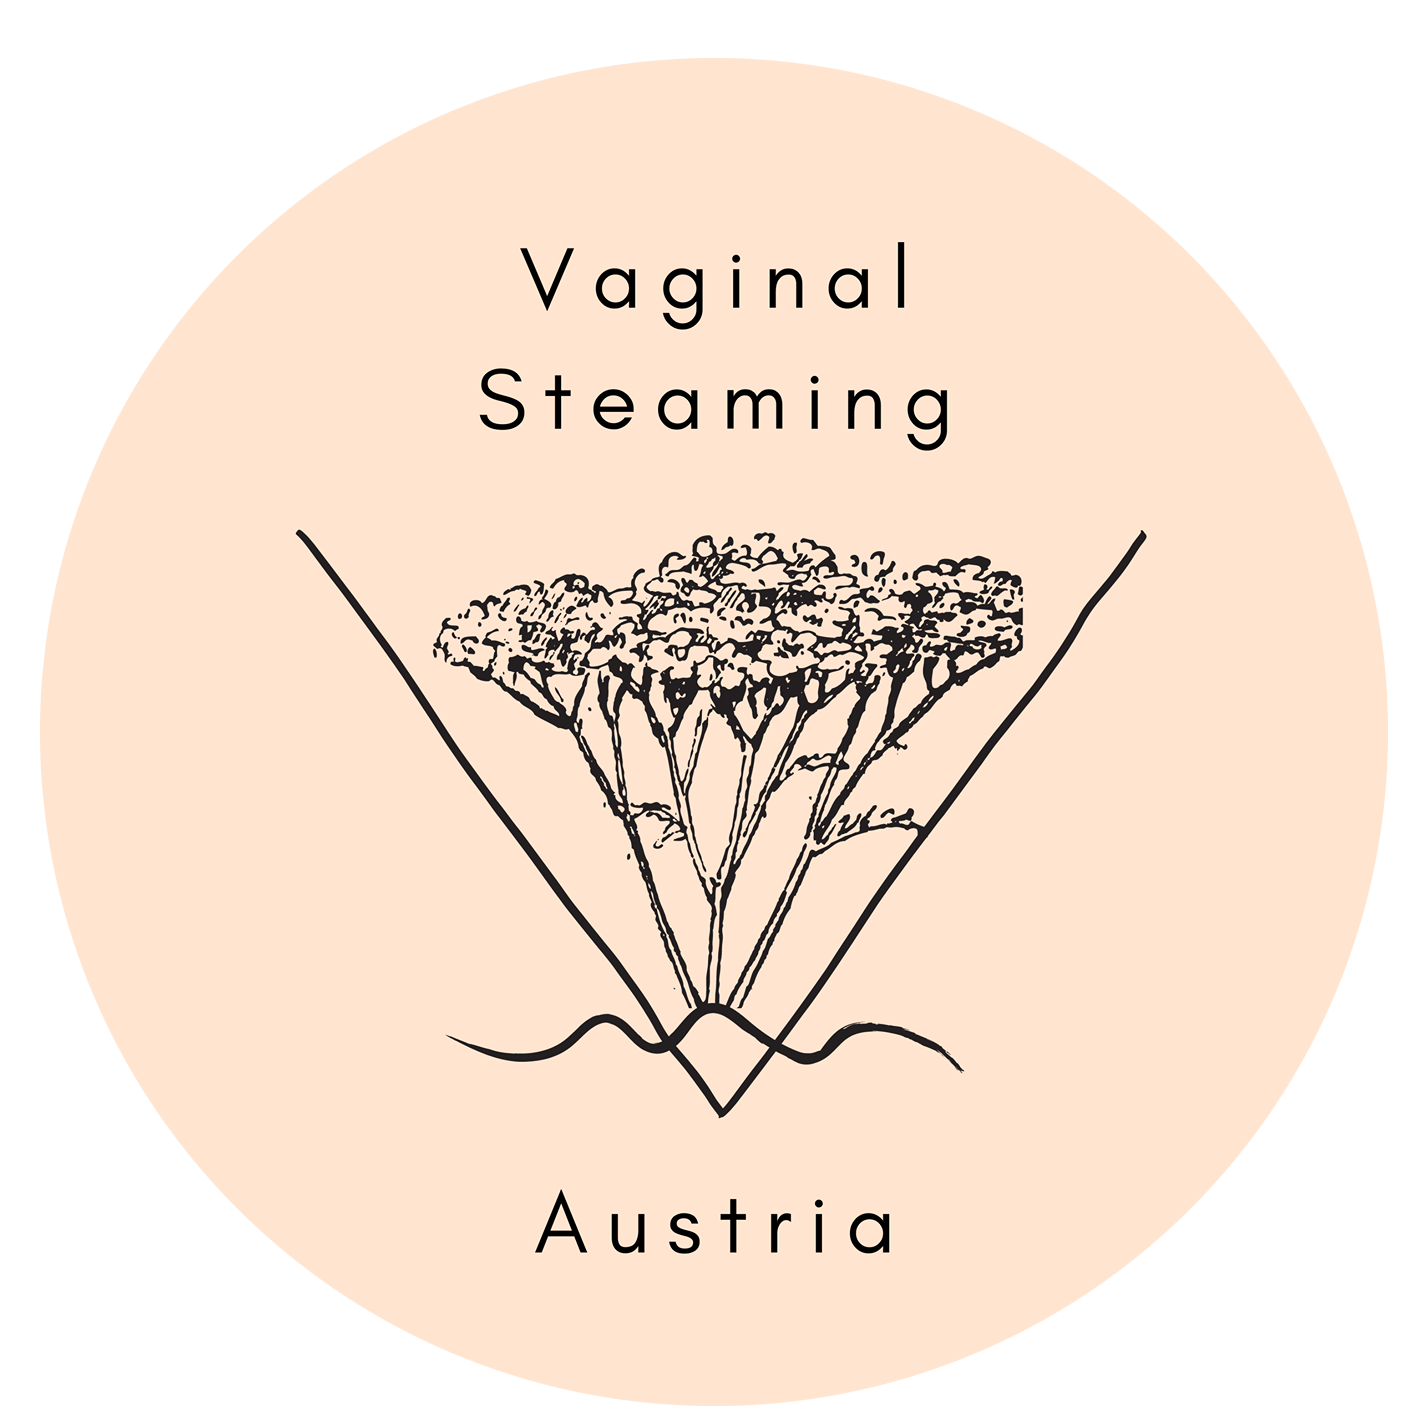 Vaginal Steaming Austria